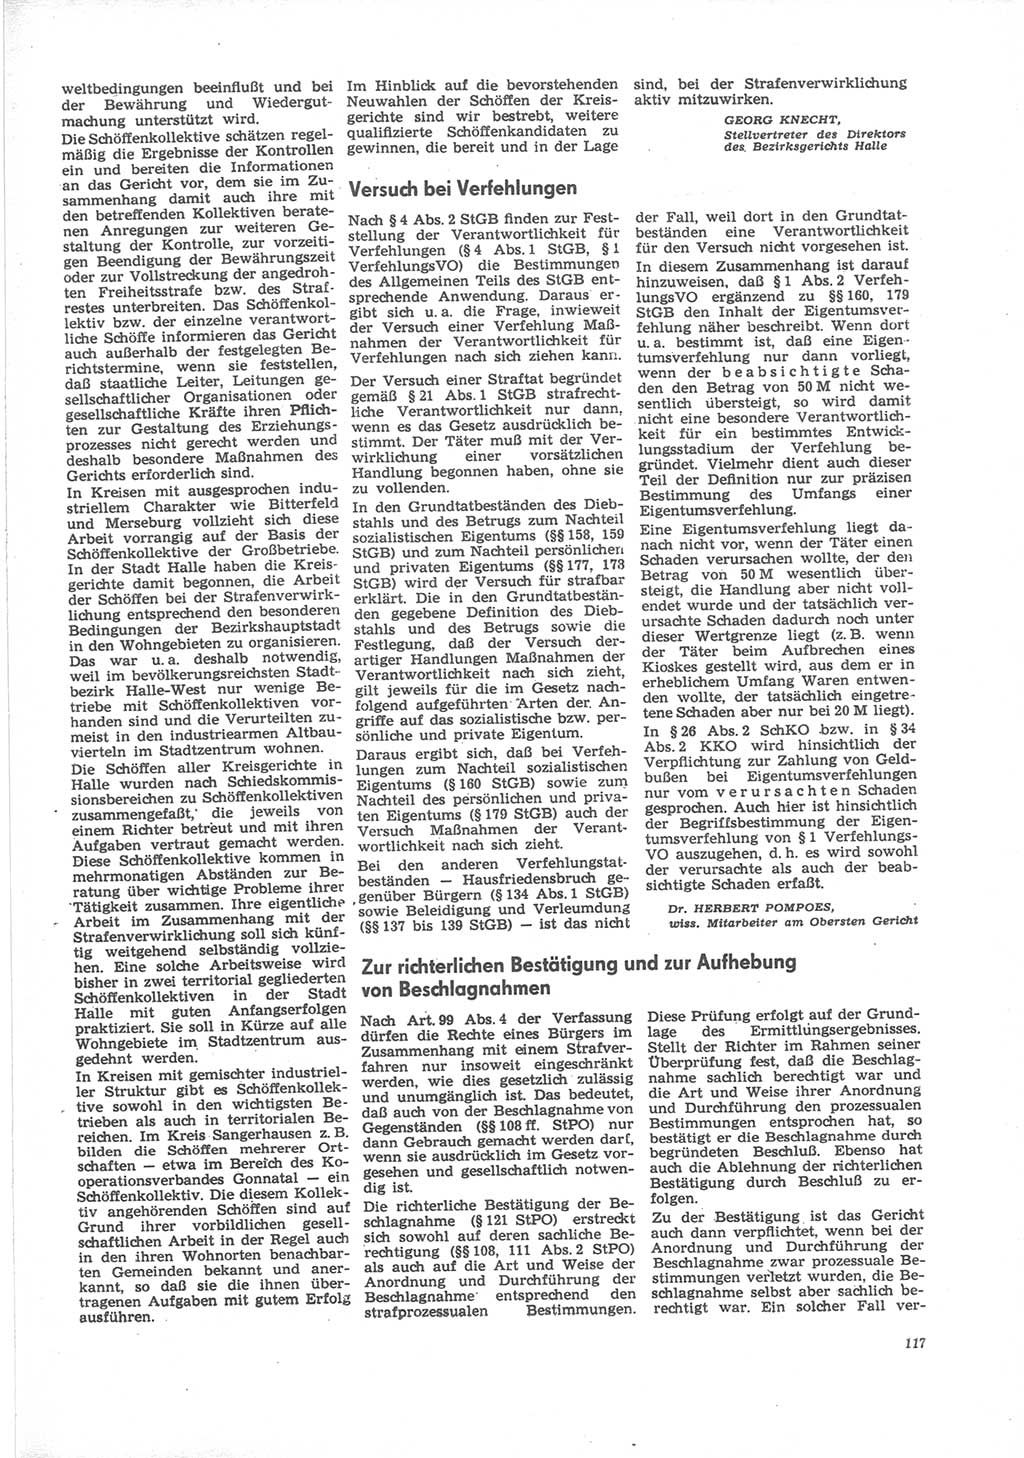 Neue Justiz (NJ), Zeitschrift für Recht und Rechtswissenschaft [Deutsche Demokratische Republik (DDR)], 24. Jahrgang 1970, Seite 117 (NJ DDR 1970, S. 117)